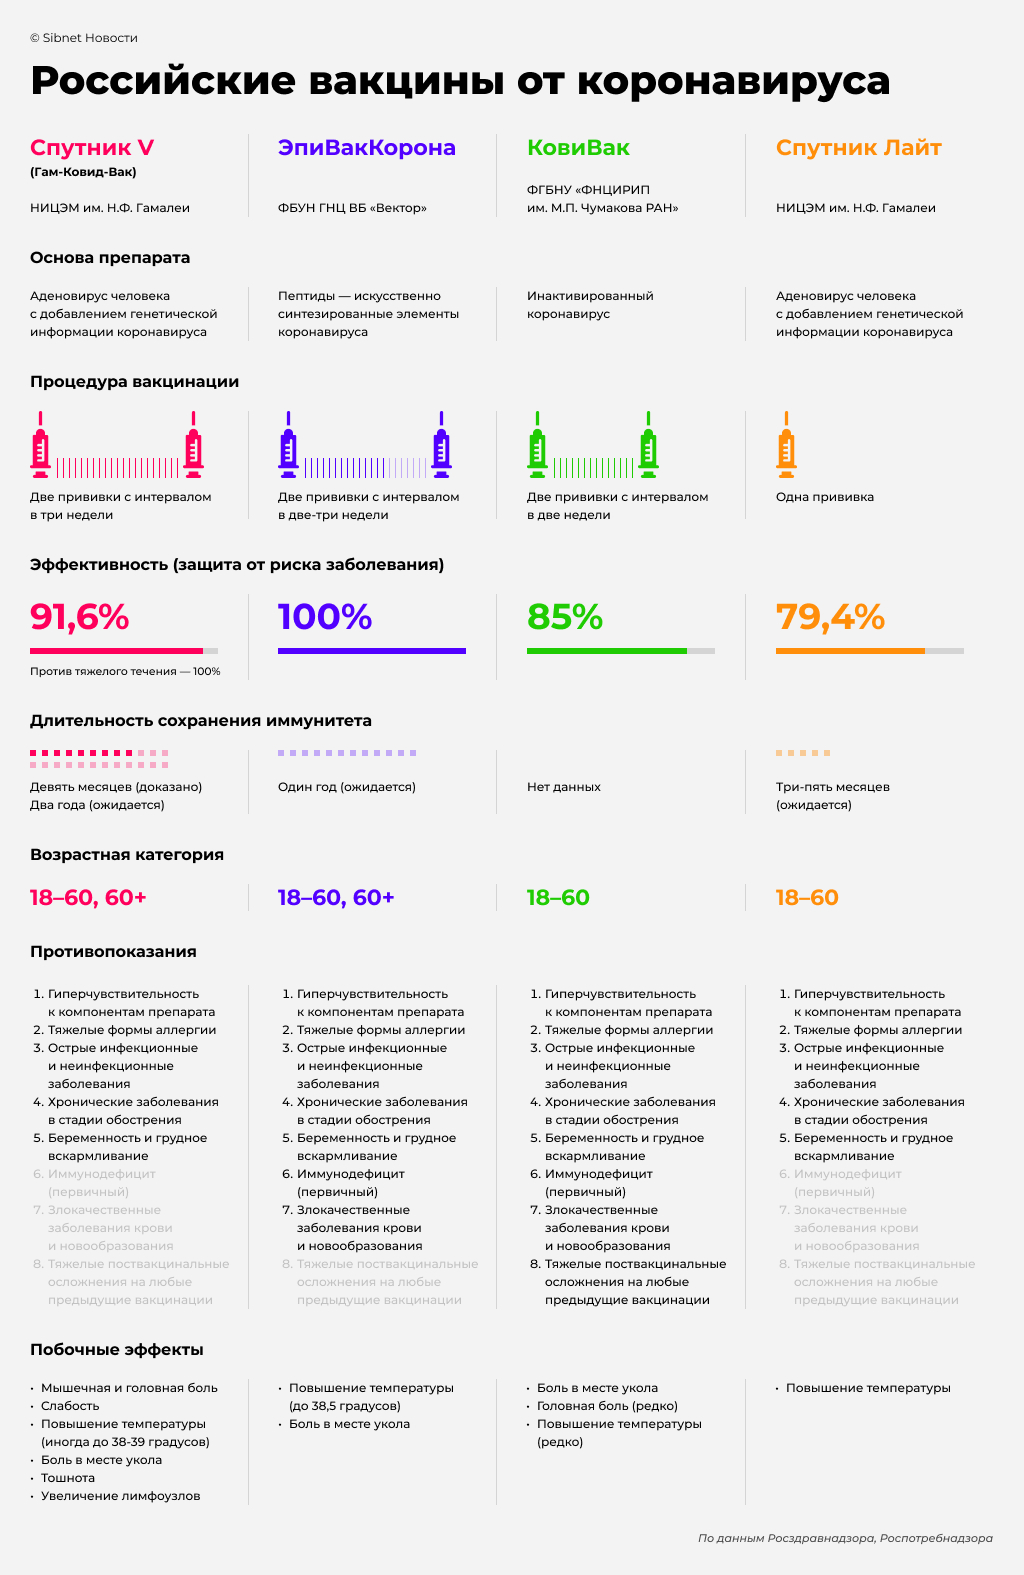 Сравнение российских вакцин против коронавируса